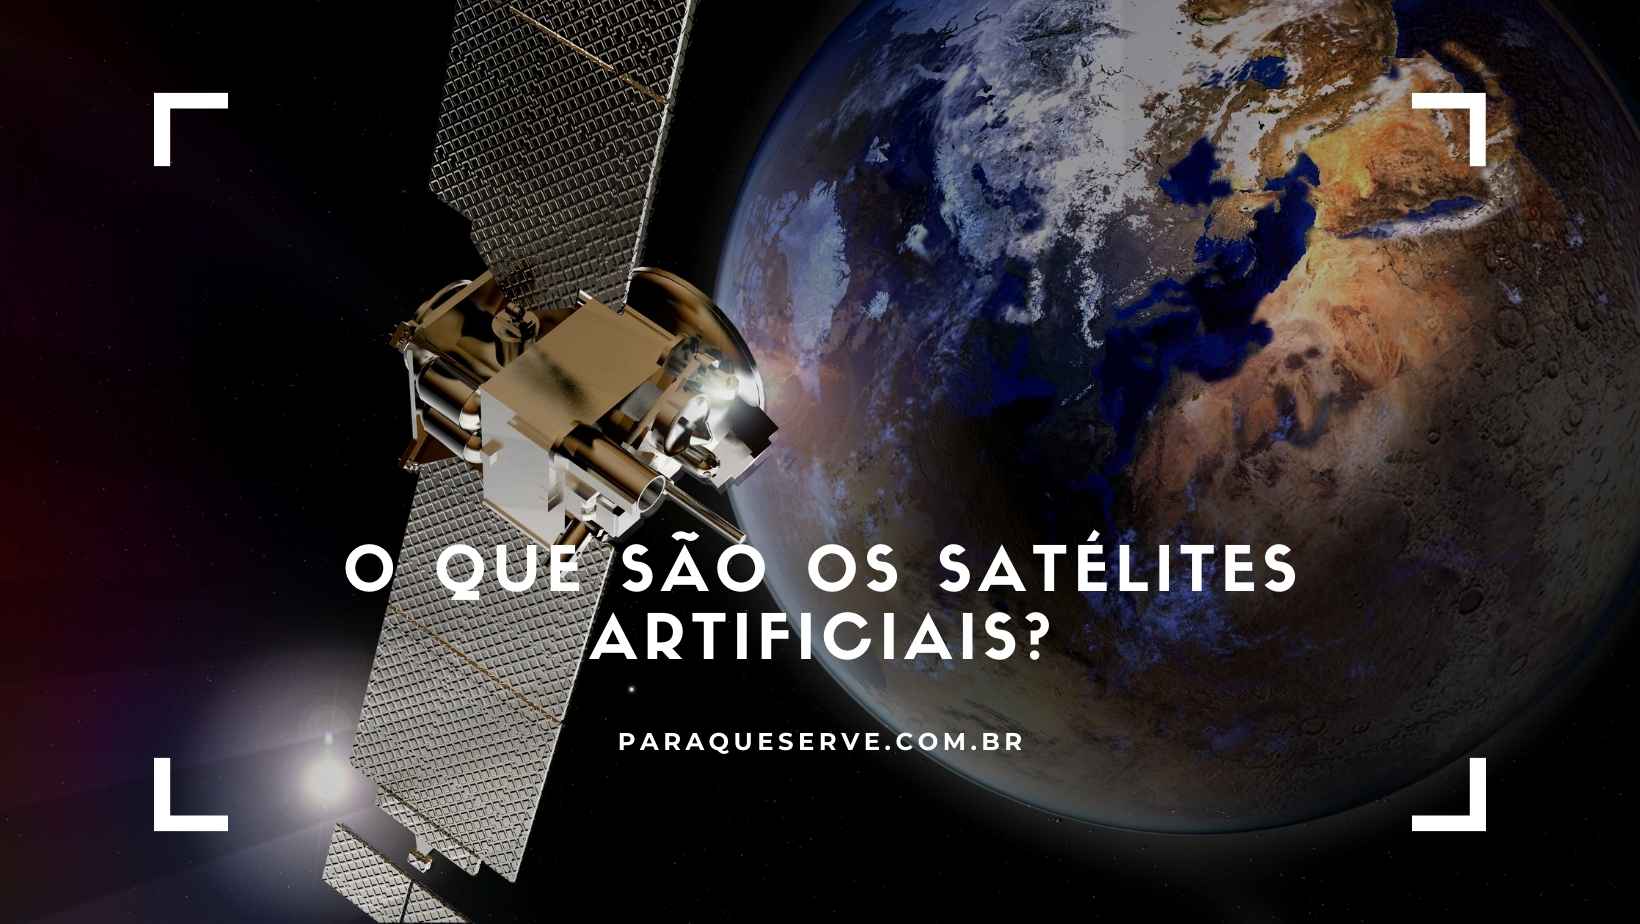 O que são os satélites artificiais